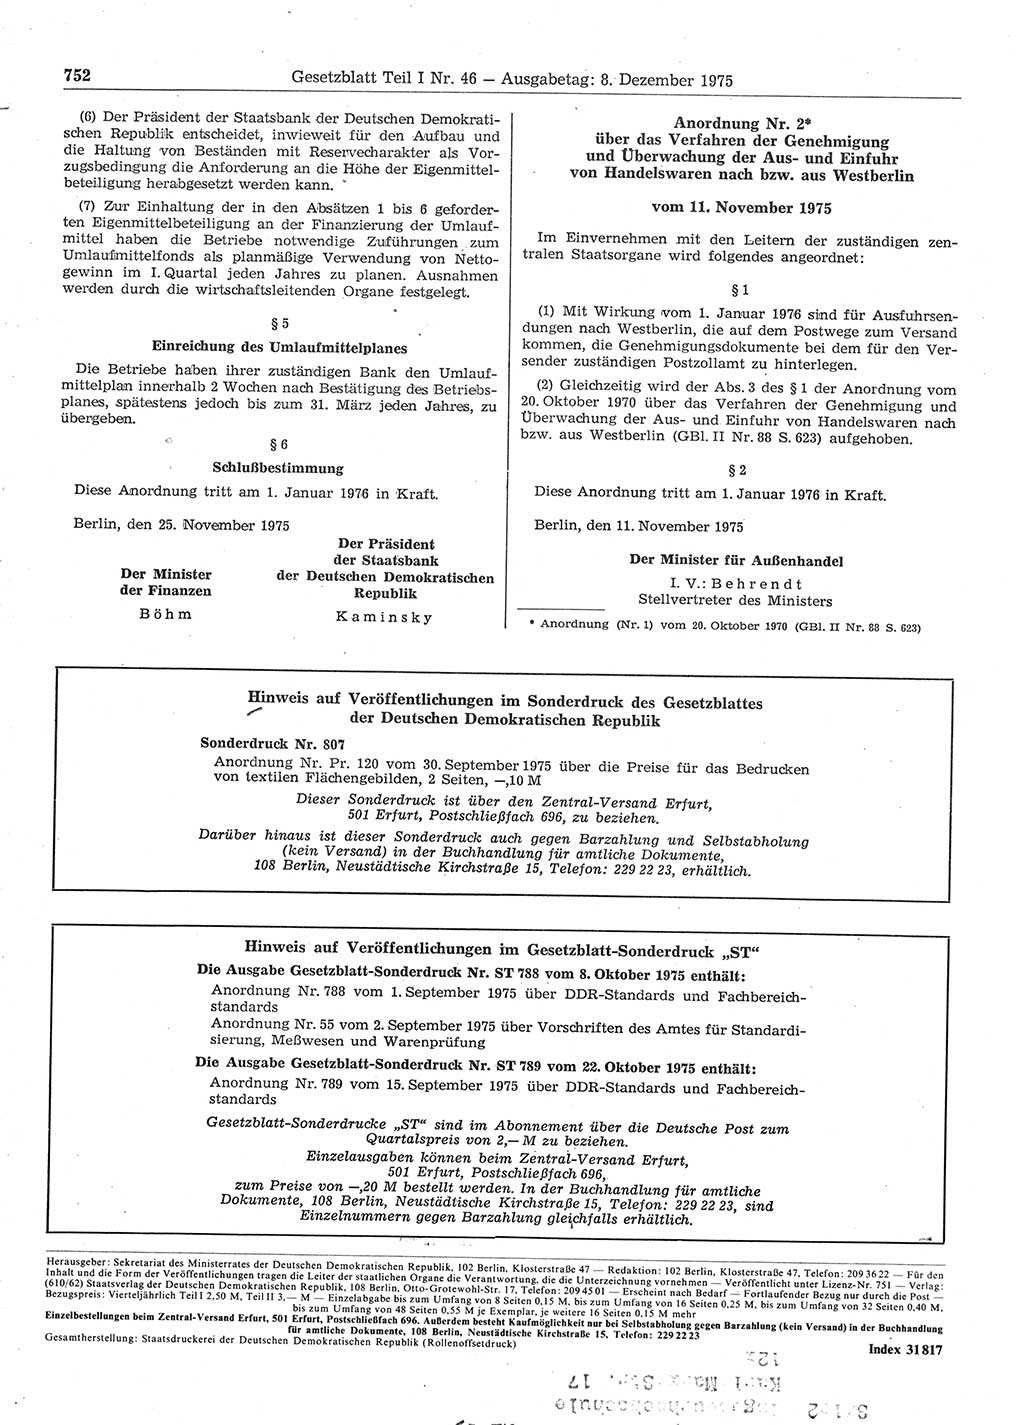 Gesetzblatt (GBl.) der Deutschen Demokratischen Republik (DDR) Teil Ⅰ 1975, Seite 752 (GBl. DDR Ⅰ 1975, S. 752)